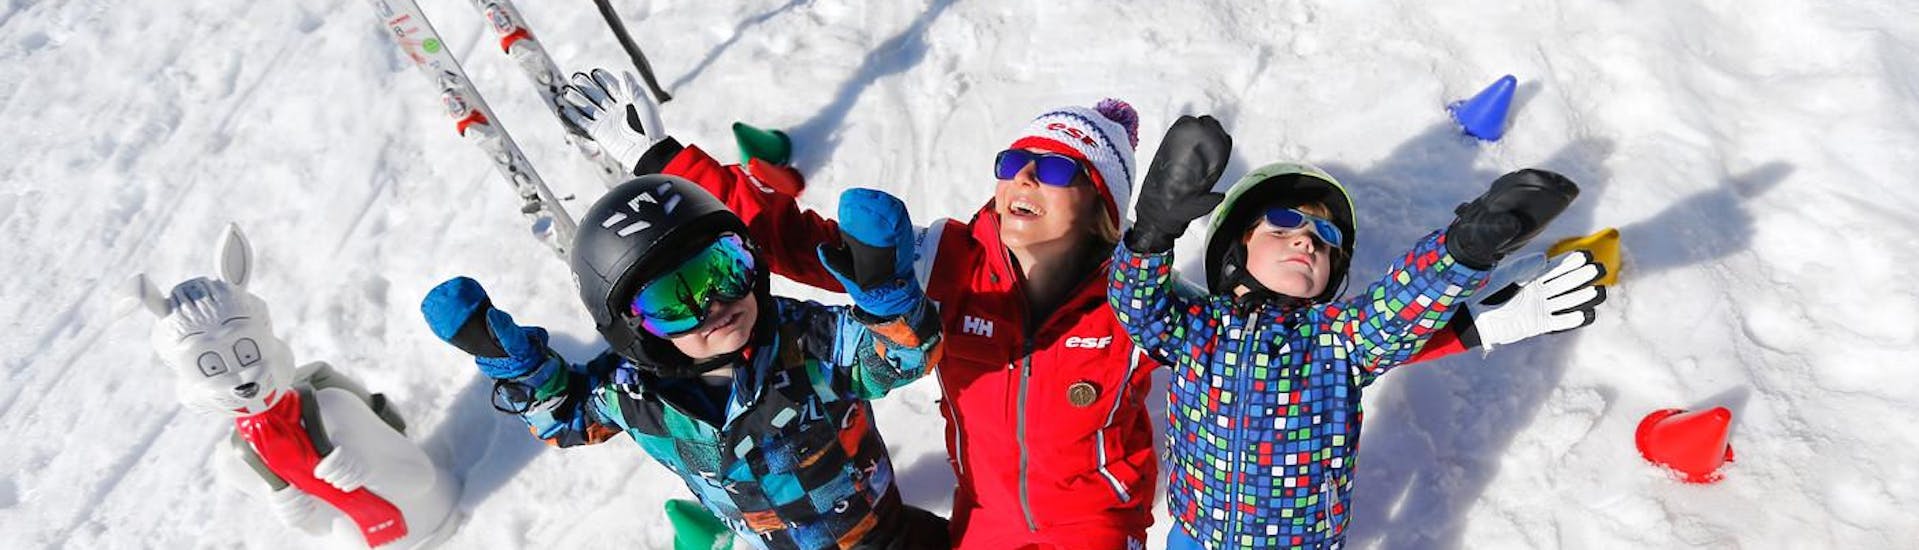 Los niños están parados en la nieve con los brazos en alto junto a su monitor de esquí de la escuela de esquí ESF Alpe d'Huez, durante sus clases de esquí para niños "Chalet Infantil" (2-5 años).